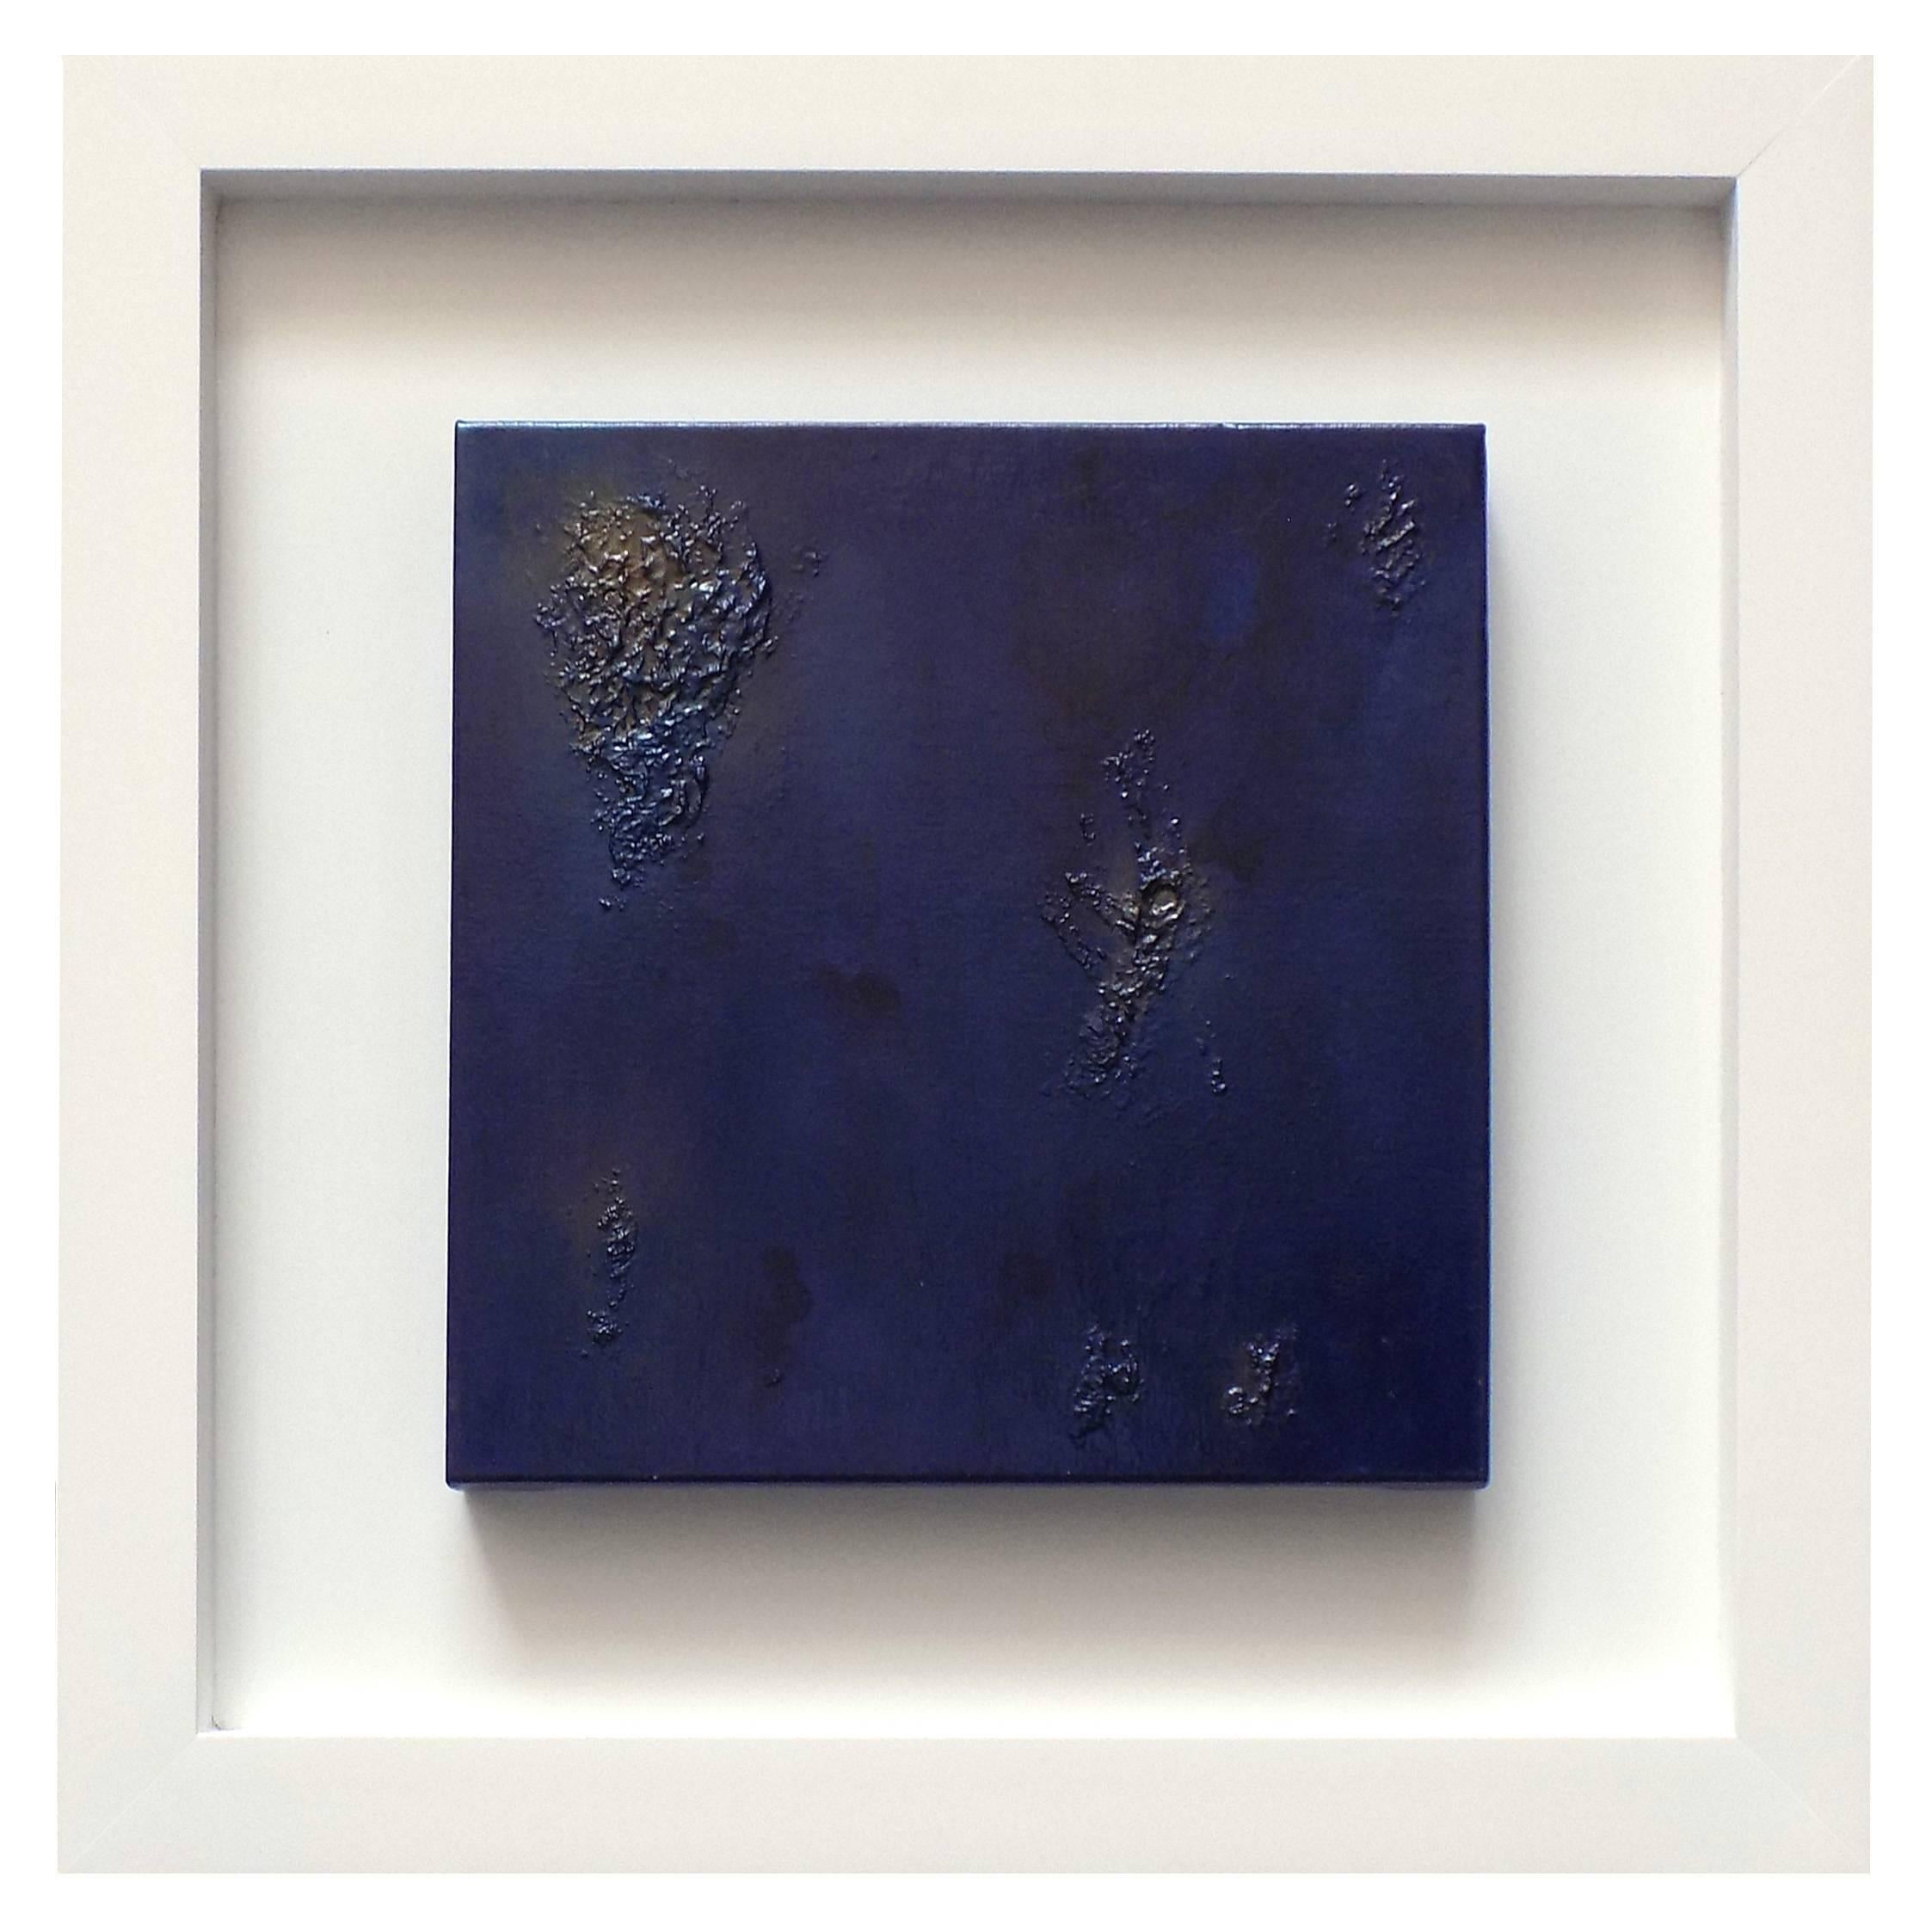 DEEP BLUE EMOTION - Technique mixte sur toile cm.40x40 de Massimo Caiafa, Italie 2016. Cadre en bois laqué blanc cm. 70x70